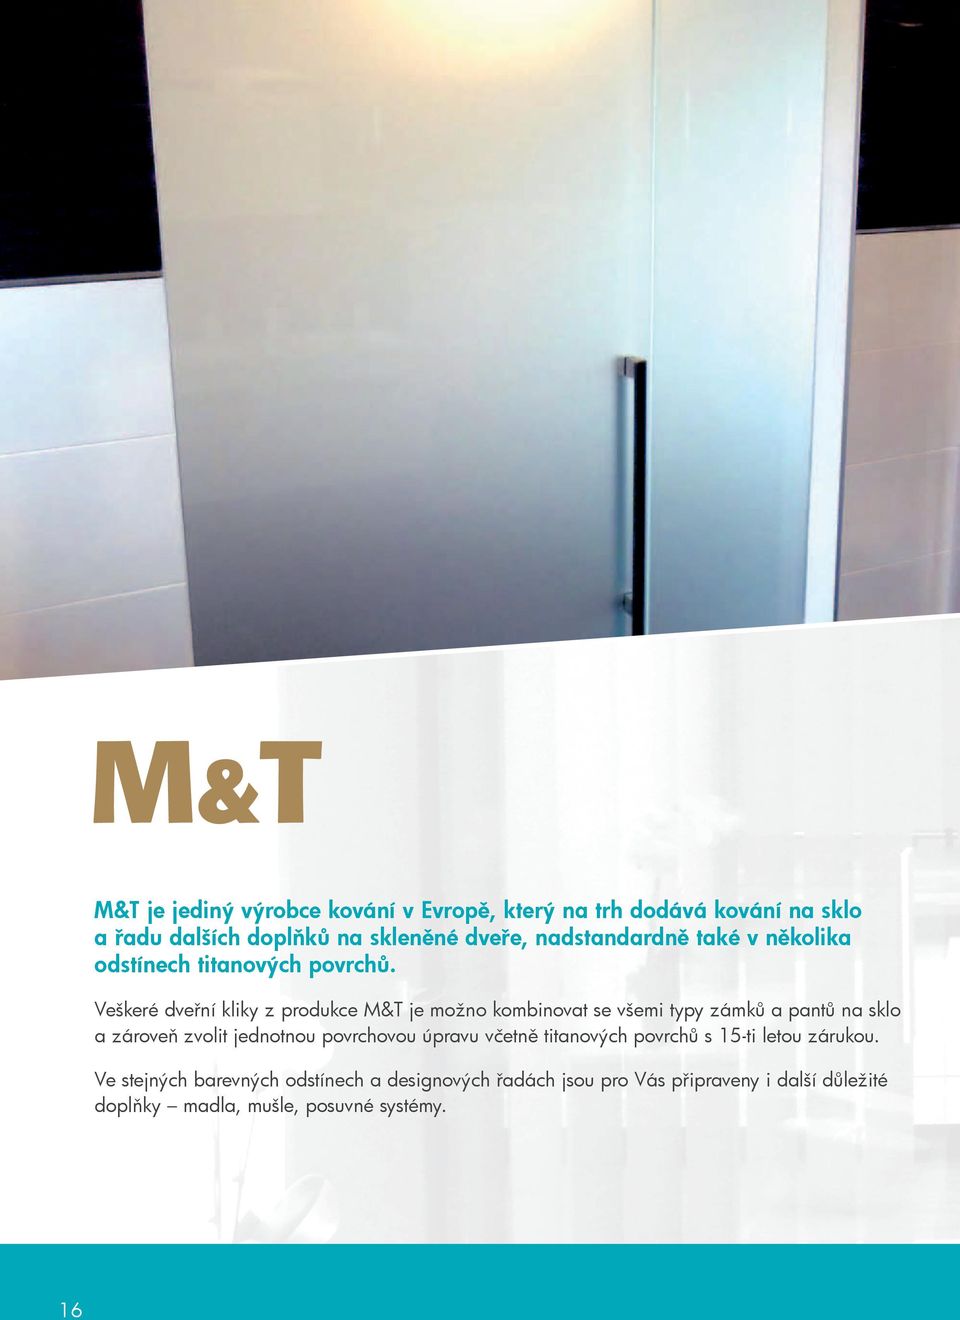 Veškeré dveřní kliky z produkce M&T je možno kombinovat se všemi typy zámků a pantů na sklo a zároveň zvolit jednotnou